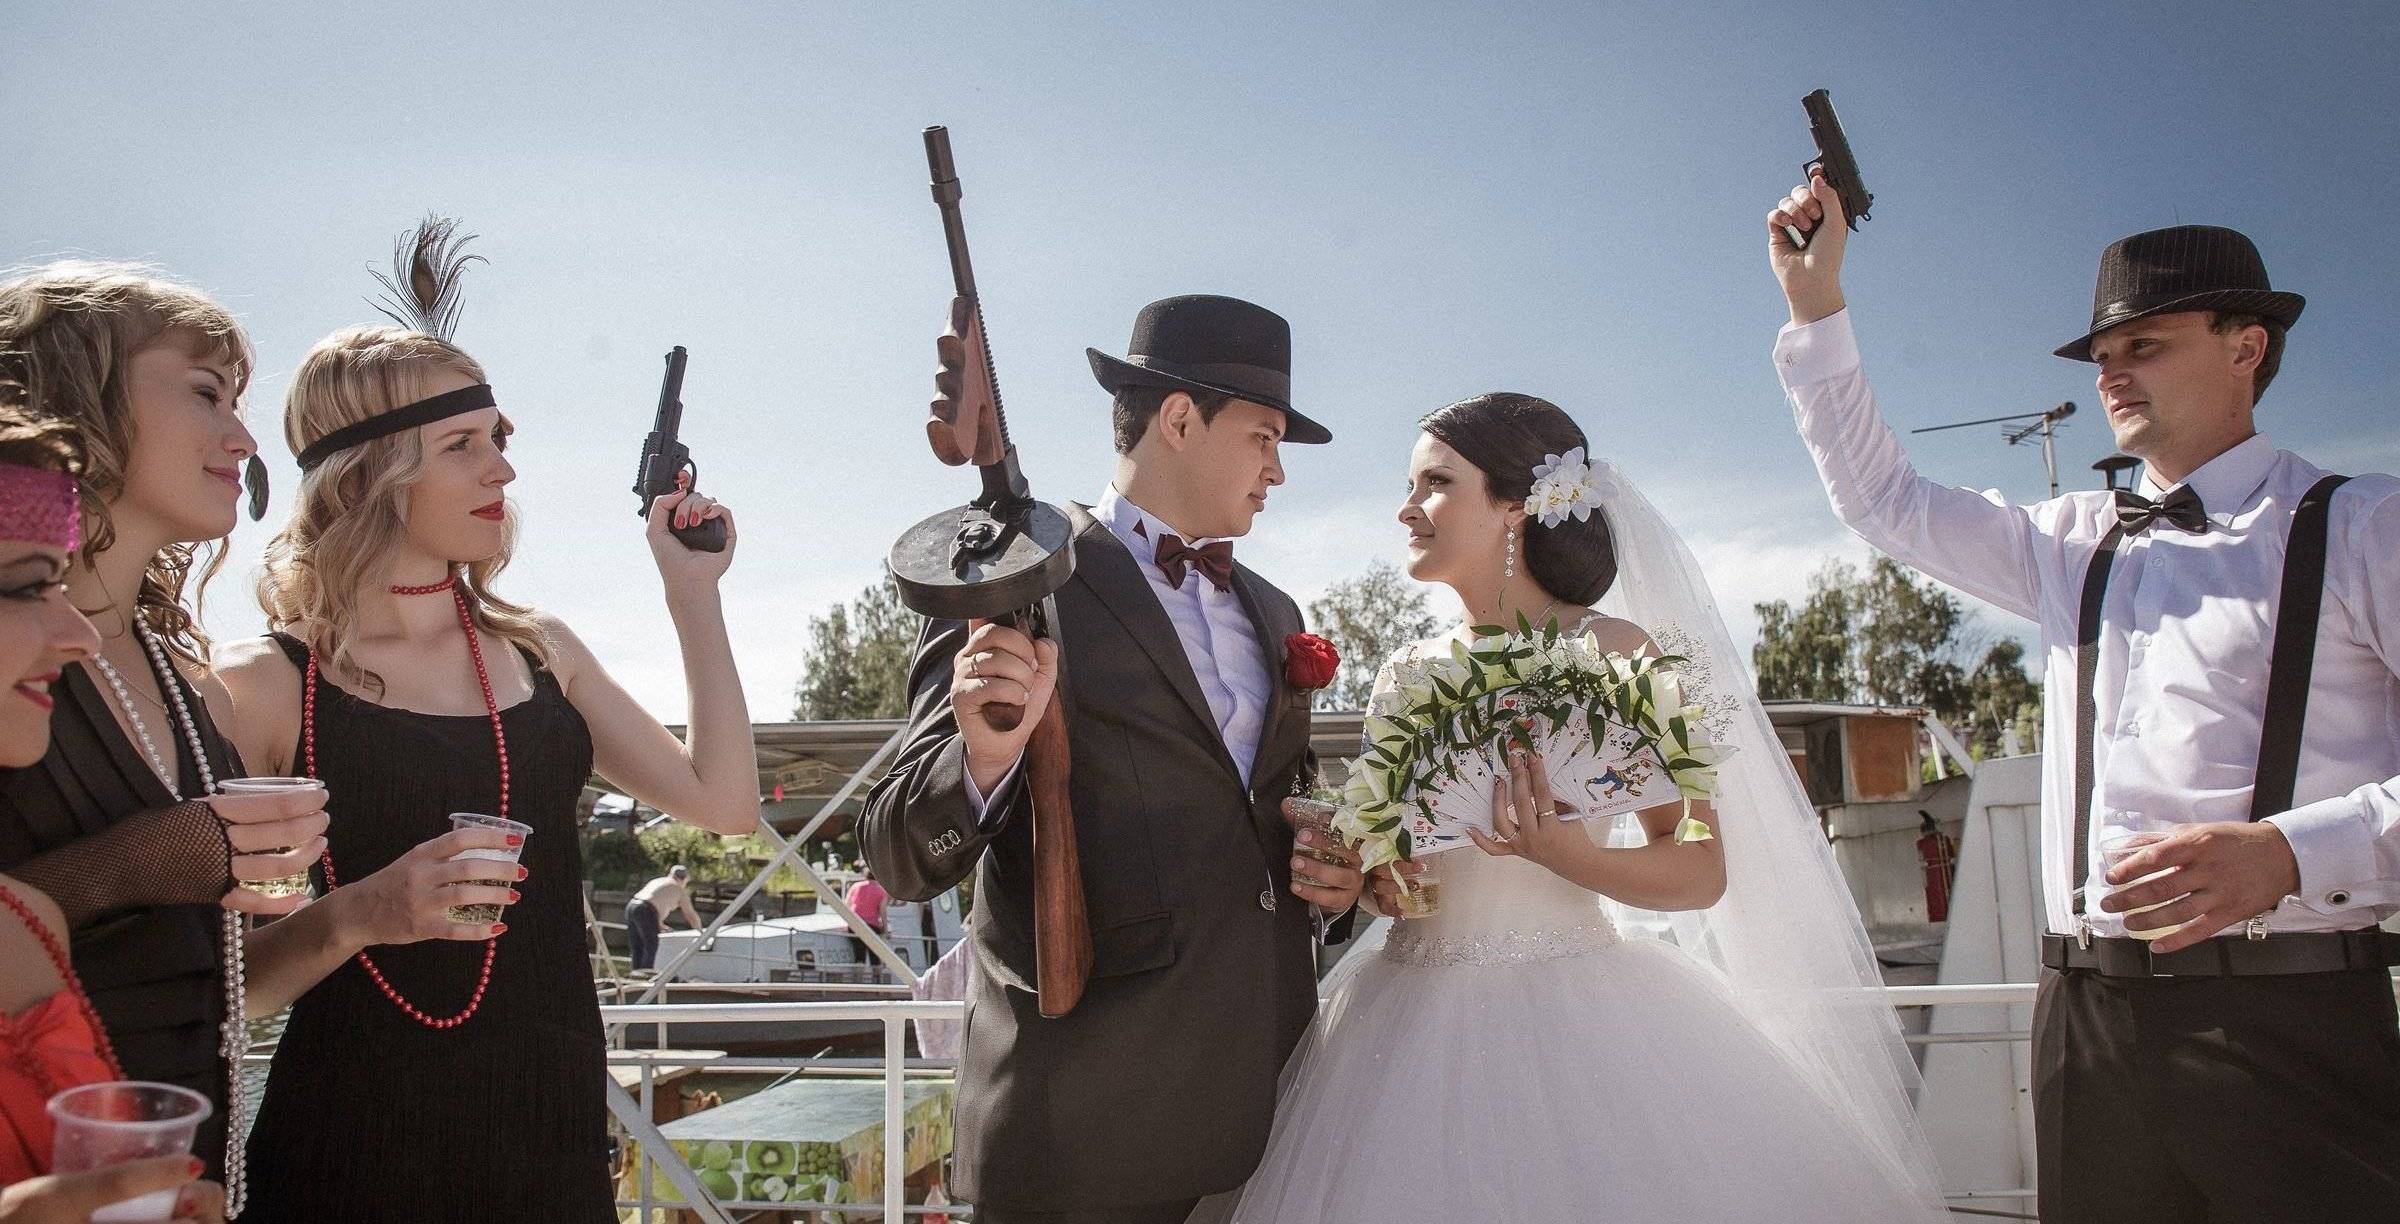 Гангстерская свадьба в стиле мафии